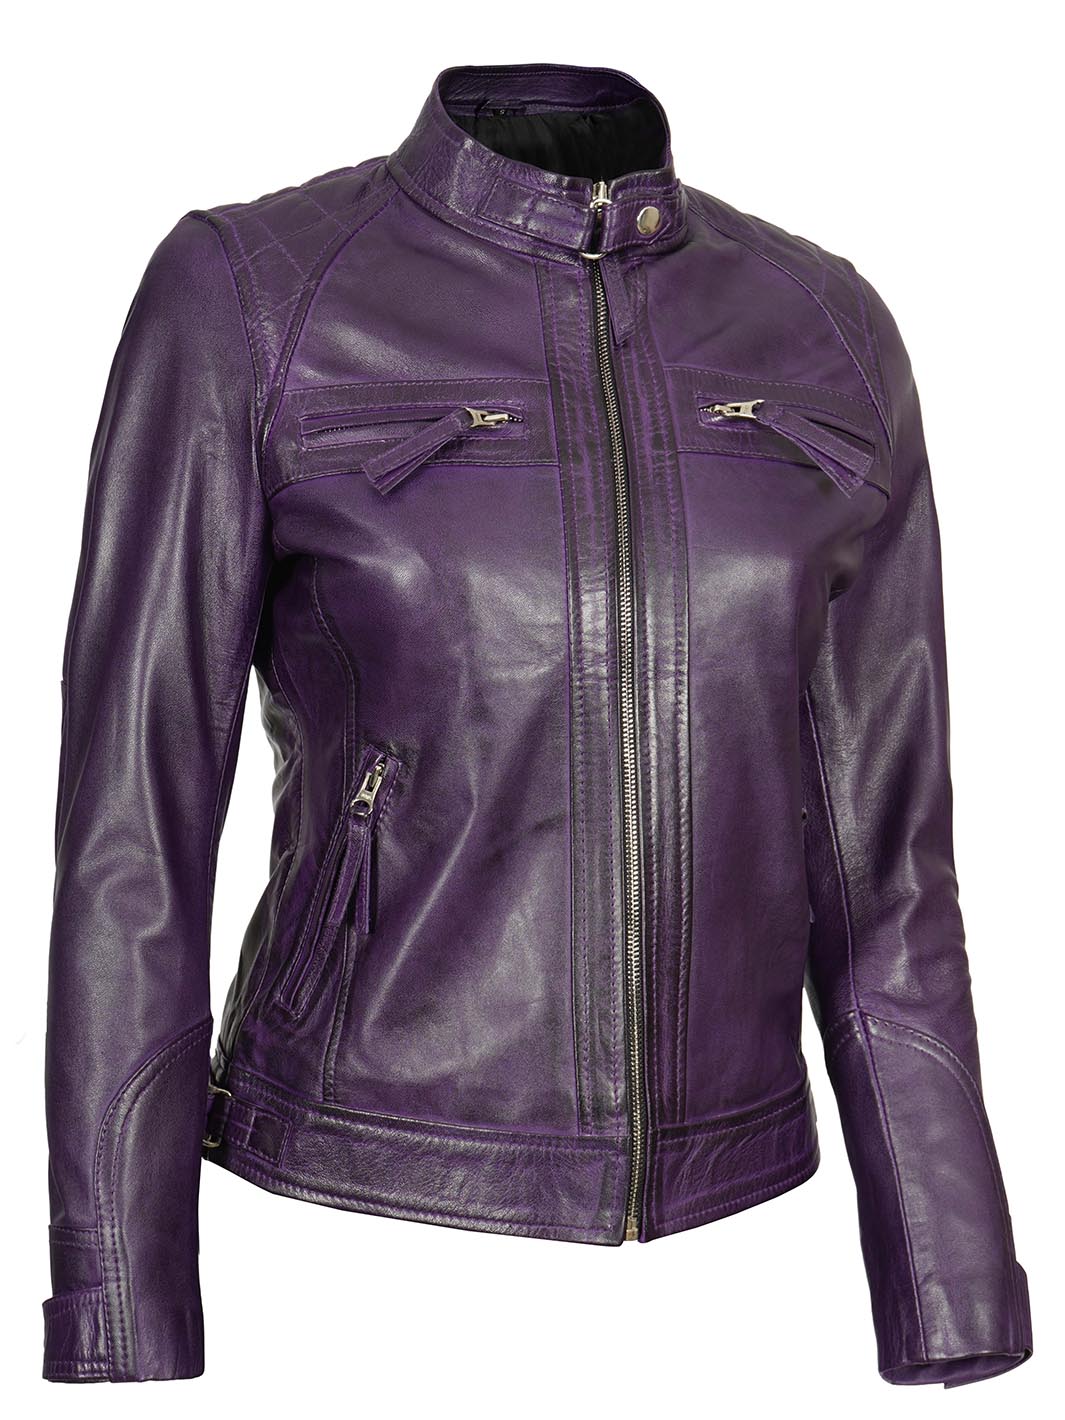 Womens Purple Biker Leather Jacket